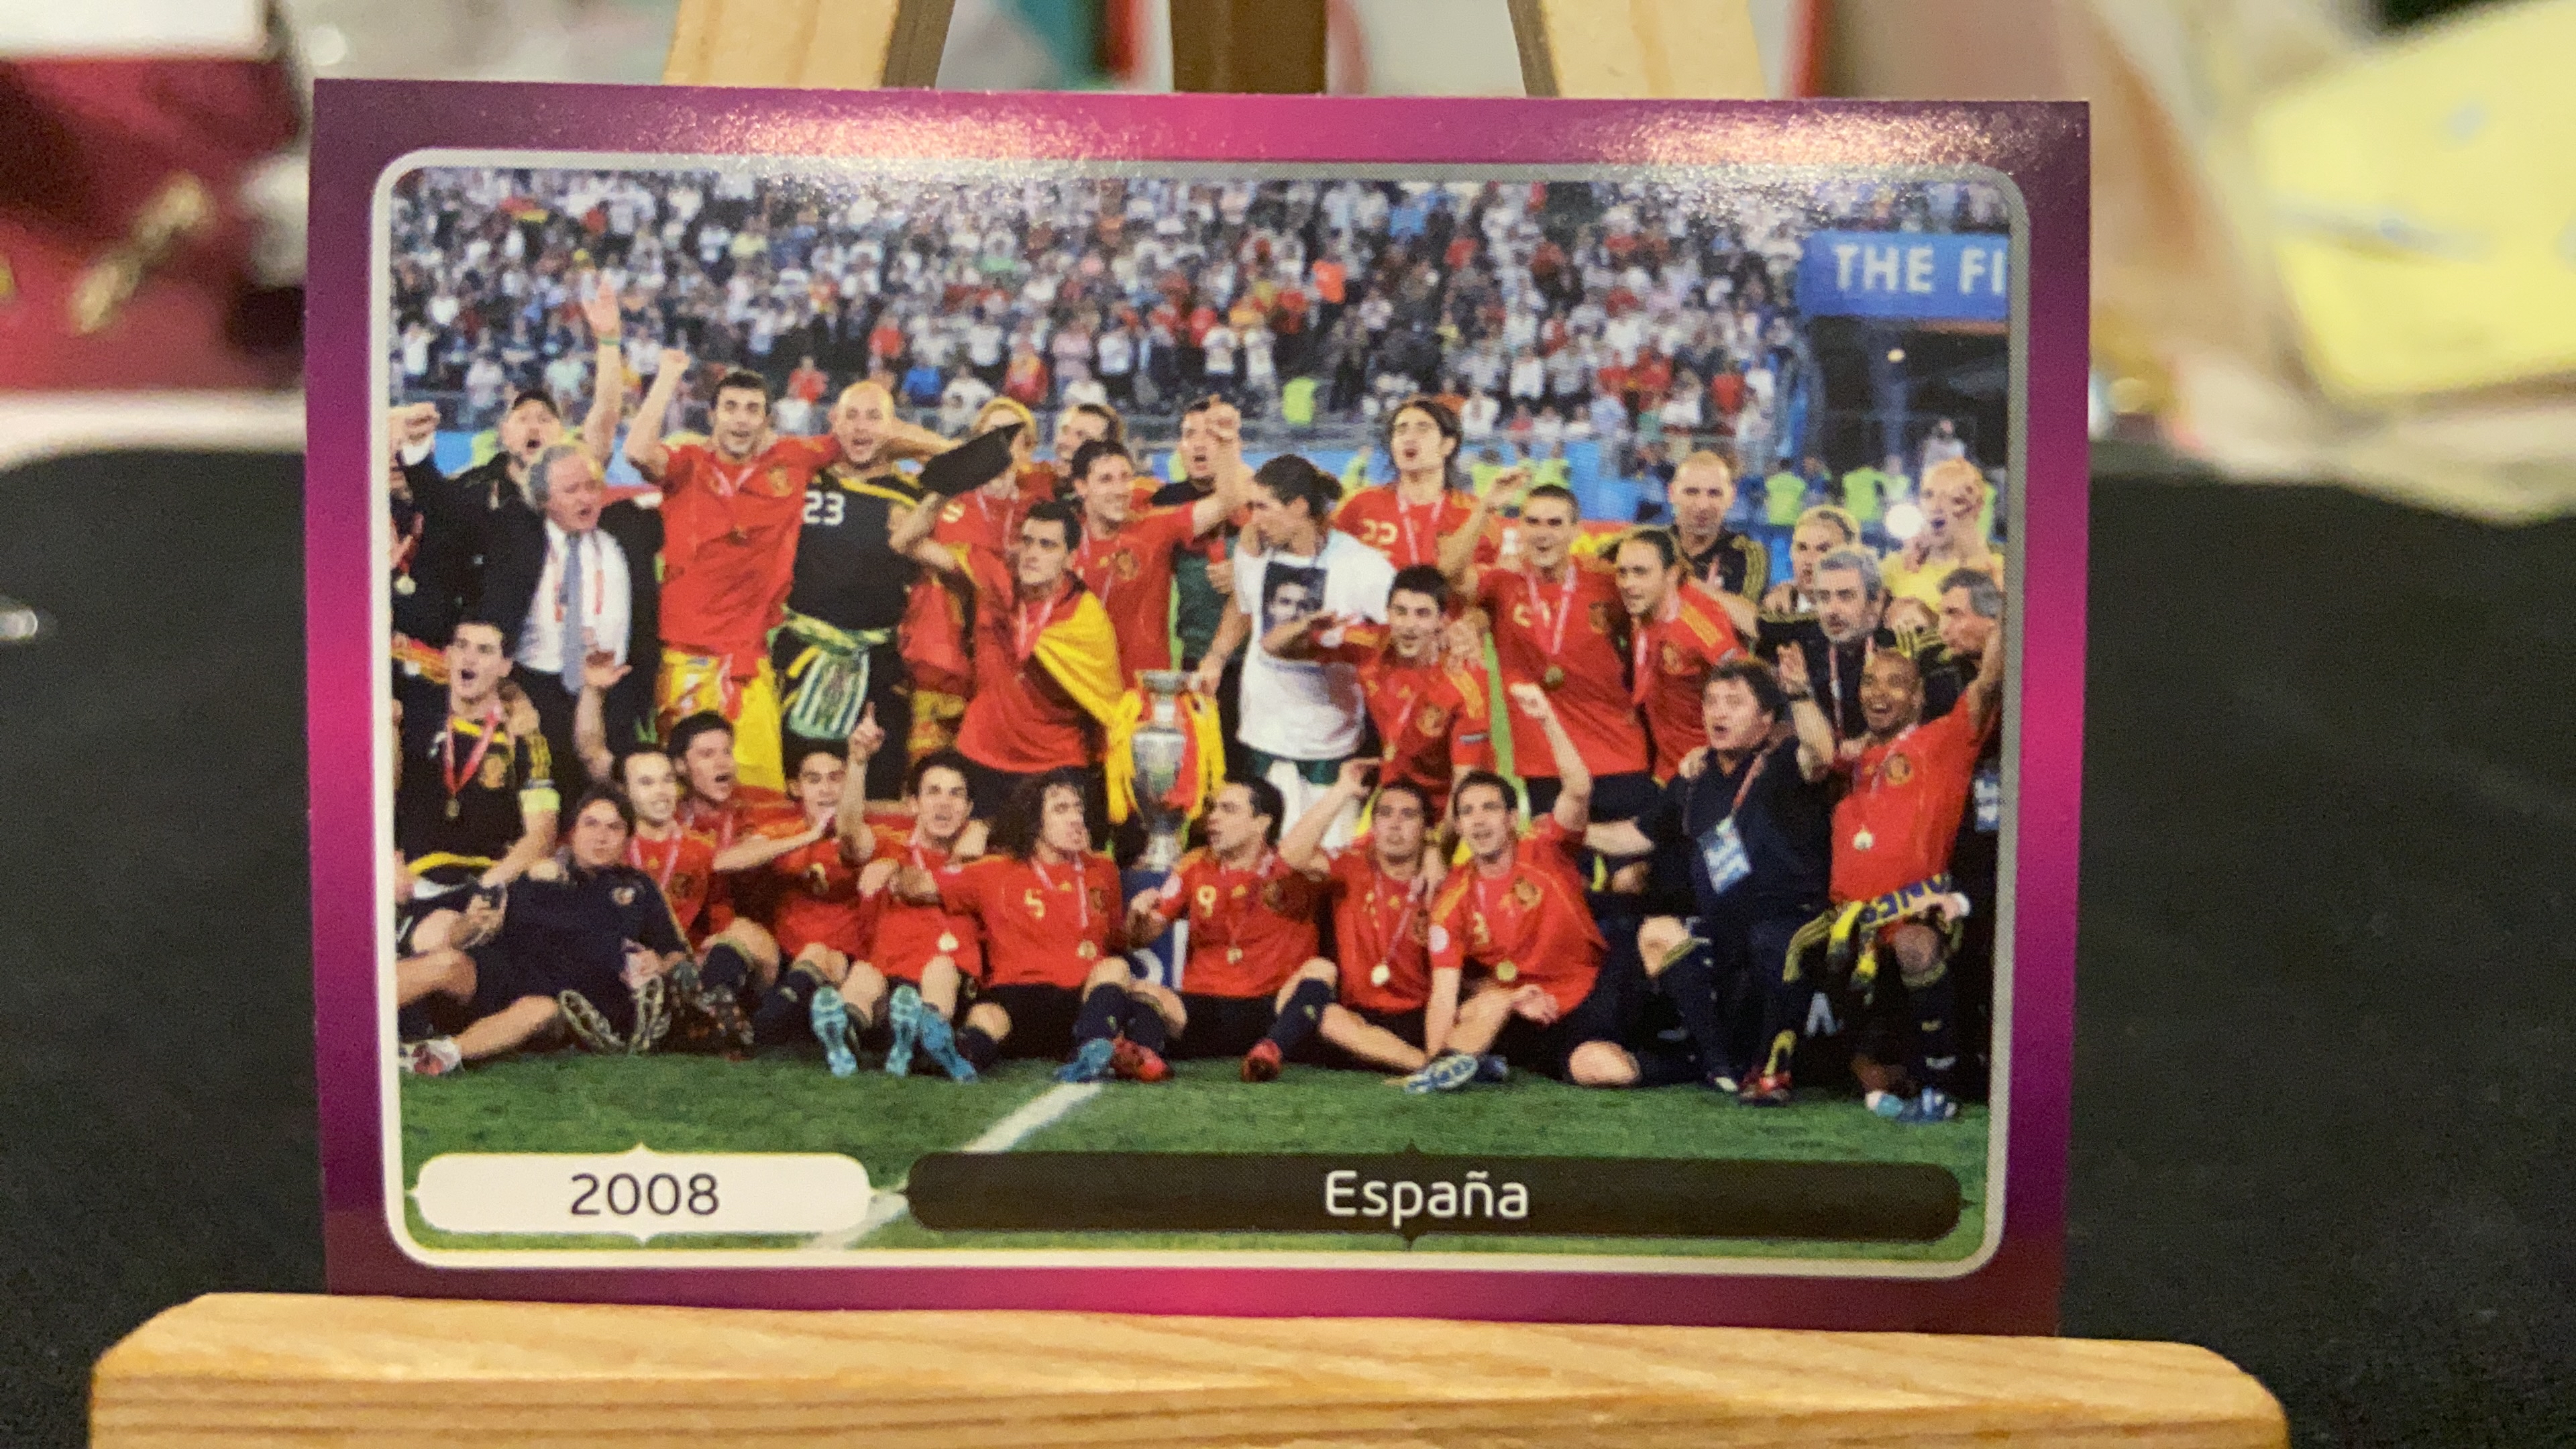 2012 Panini Euro 欧洲杯 贴纸 【不累计】 西班牙 2008夺冠 哈维 伊涅斯塔 卡西利亚斯 普约尔 大卫比利亚 凑套